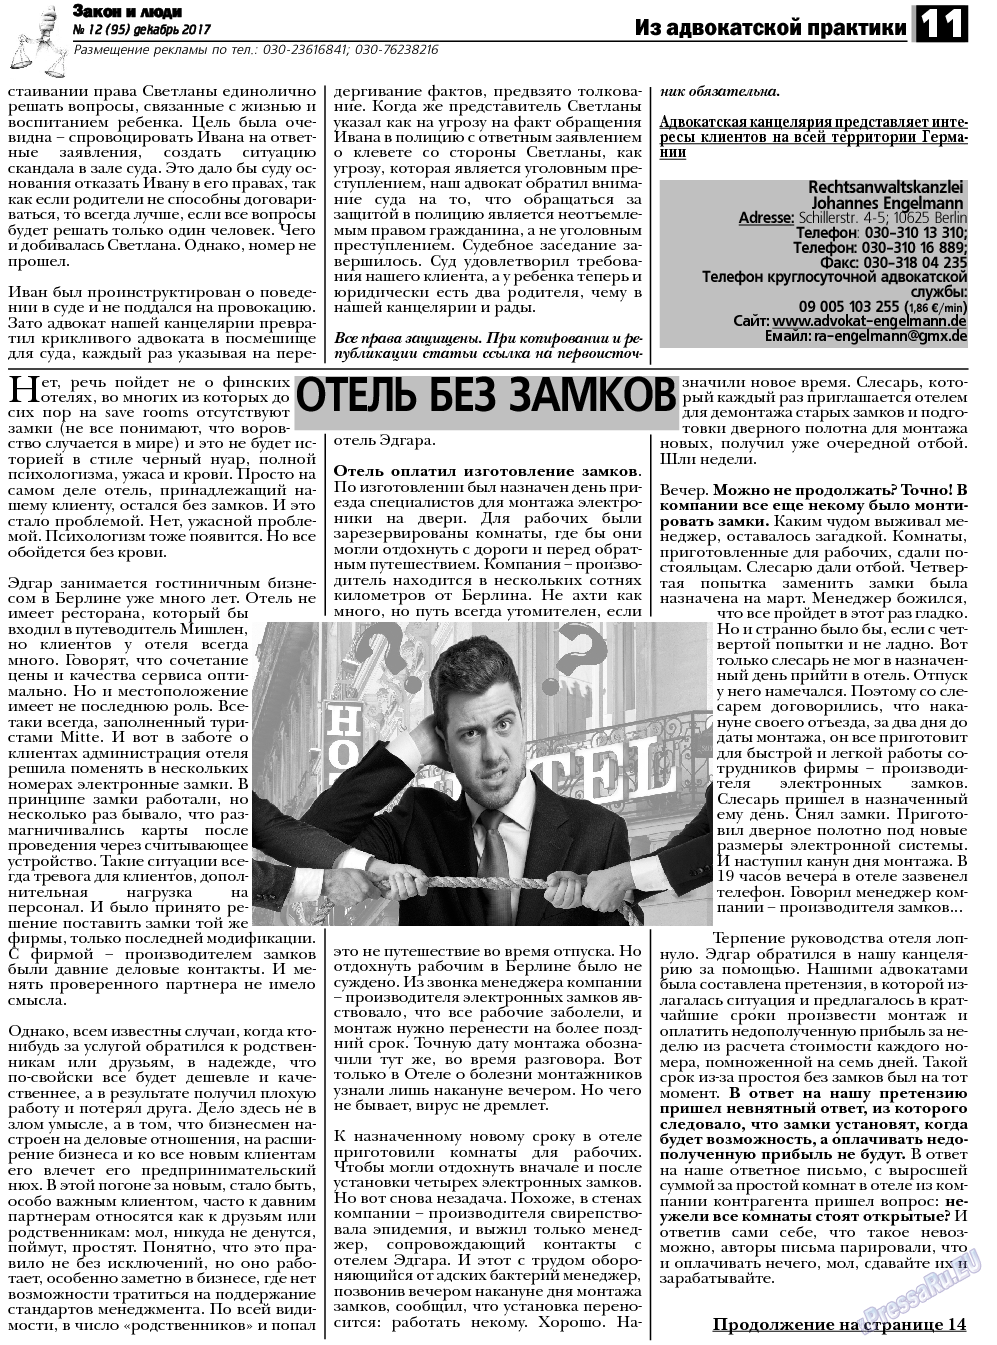 Закон и люди, газета. 2017 №12 стр.11